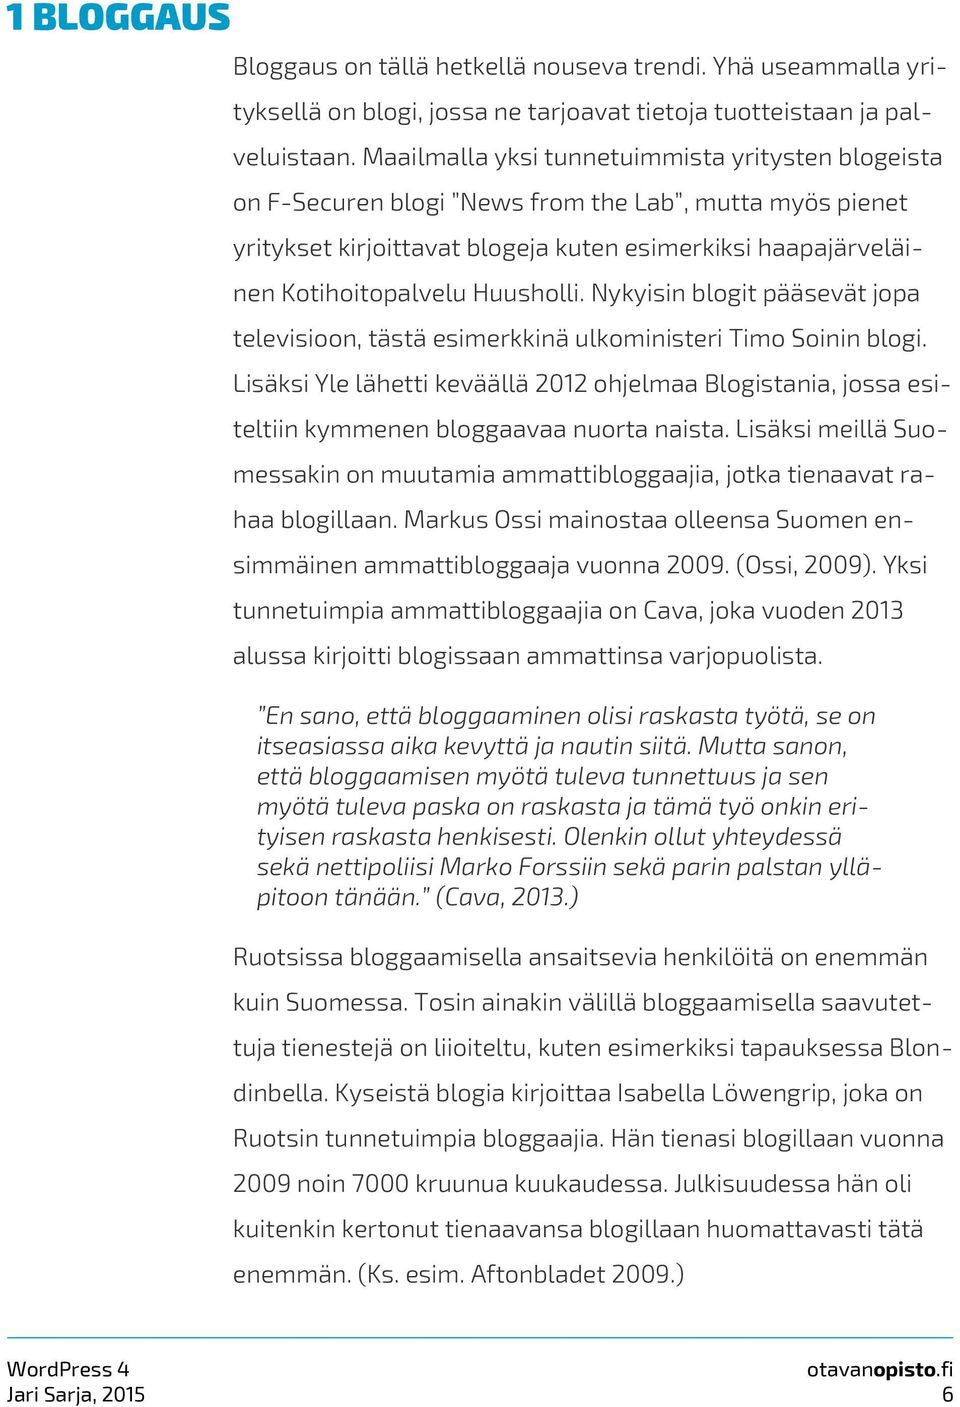 Nykyisin blogit pääsevät jopa televisioon, tästä esimerkkinä ulkoministeri Timo Soinin blogi.